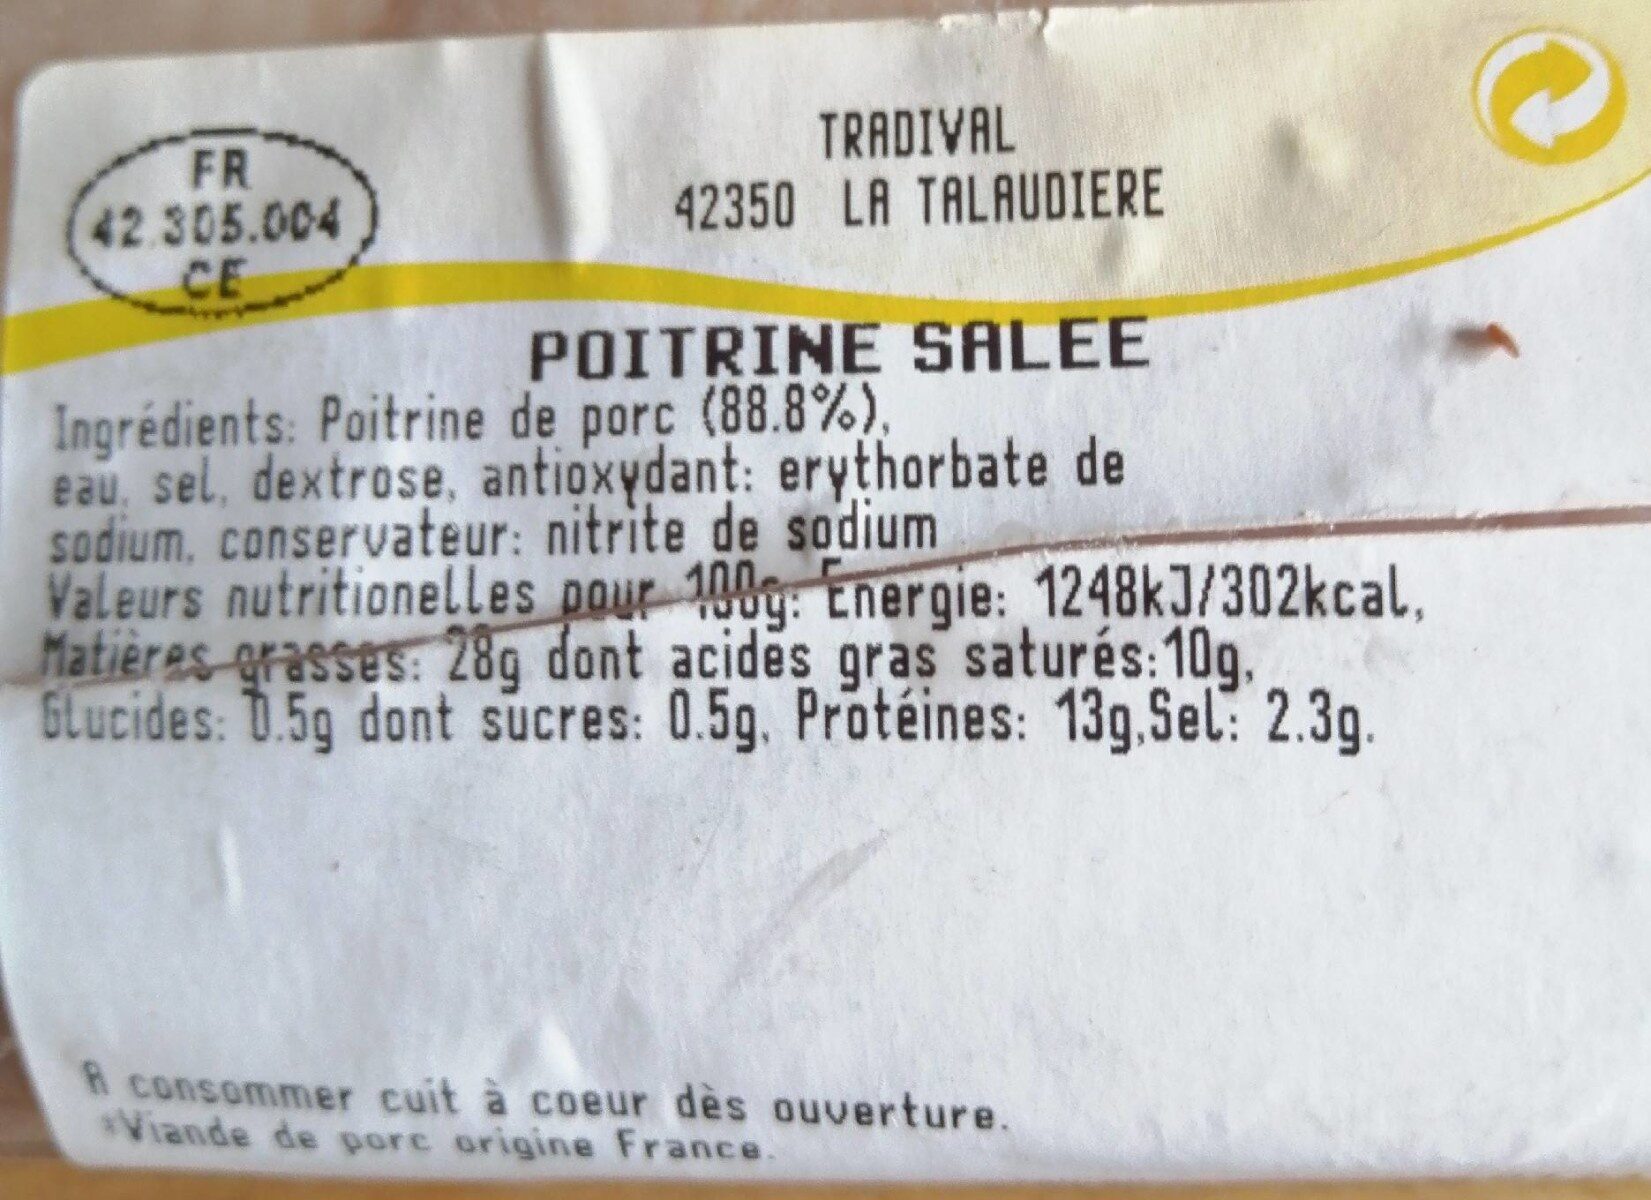 Poitrine salée - Nutrition facts - fr